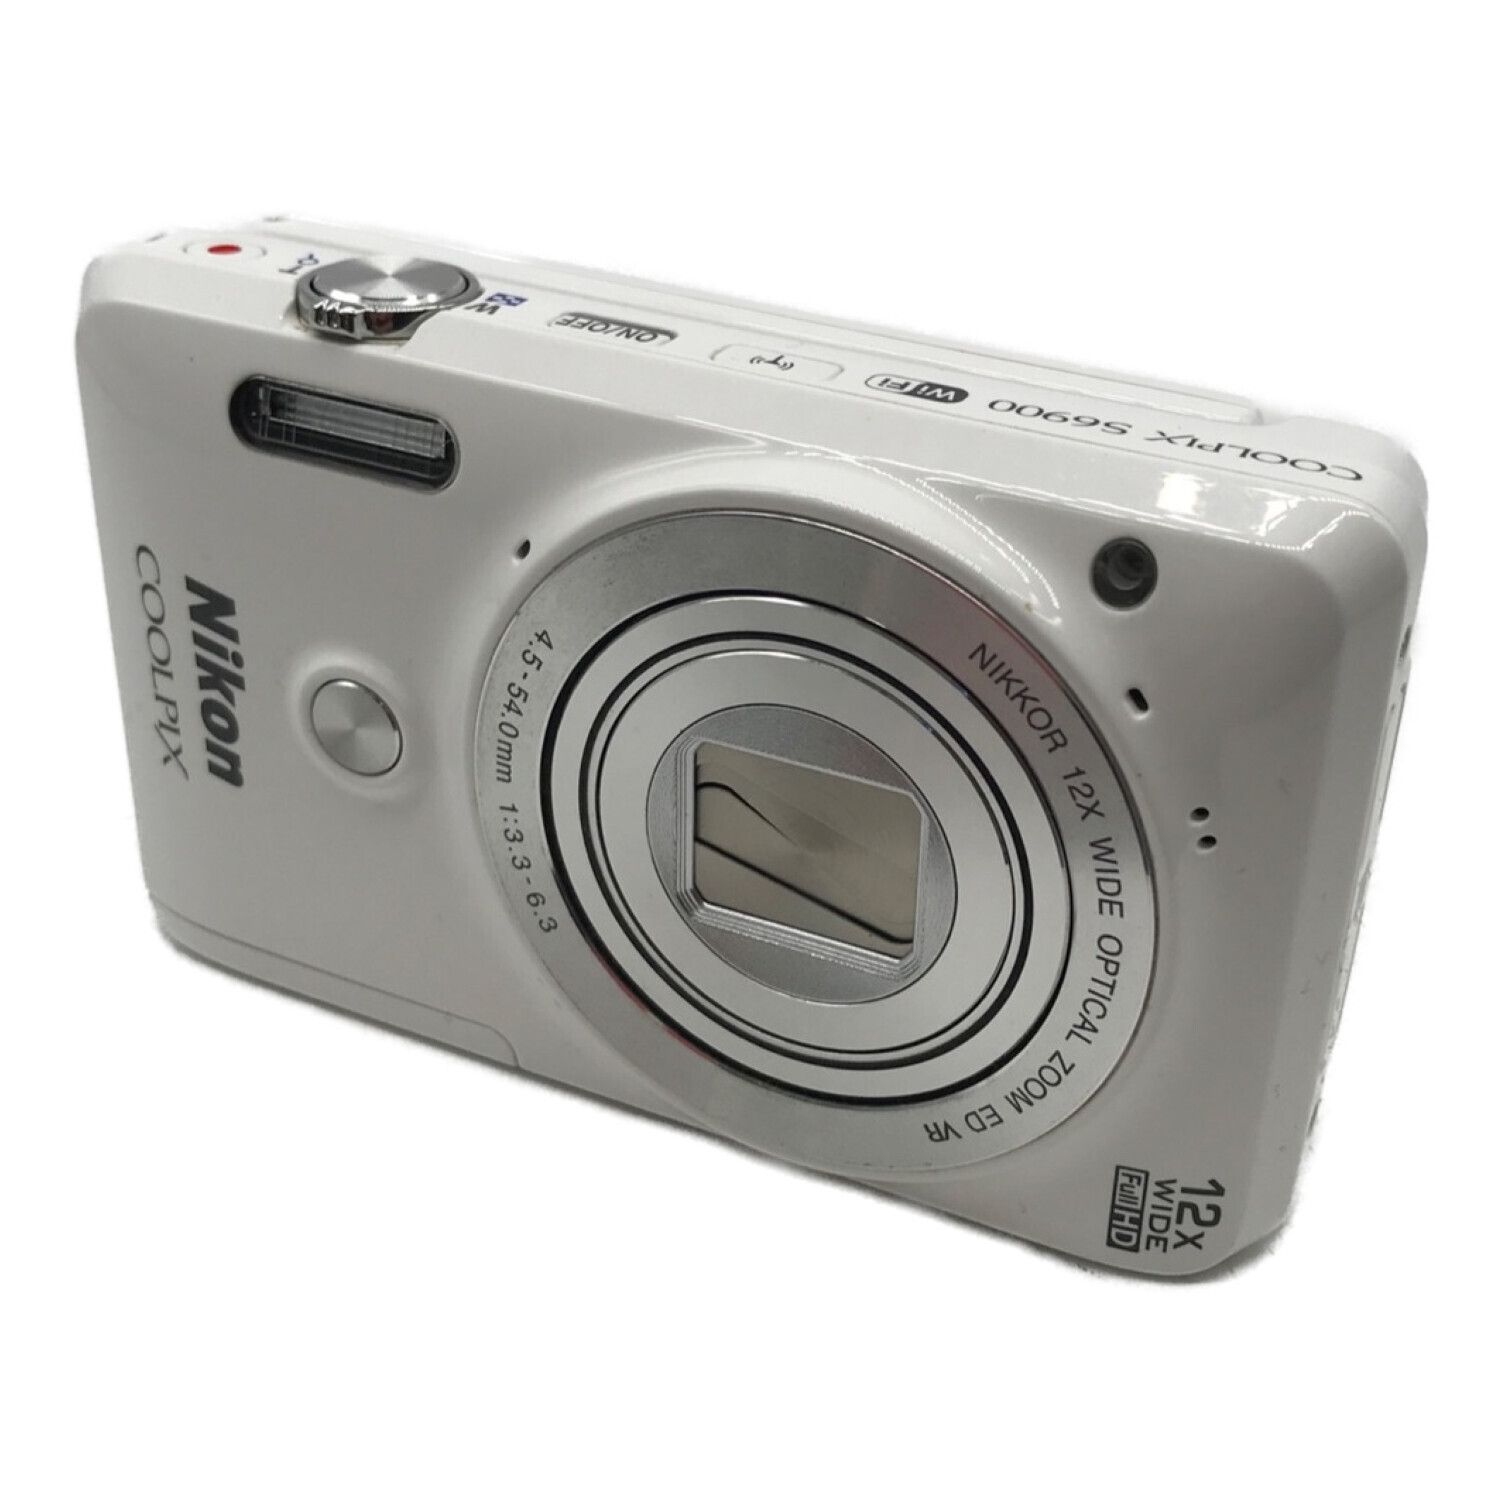 Nikon (ニコン) デジタルカメラ COOLPIX S6900 1676万画素(総画素